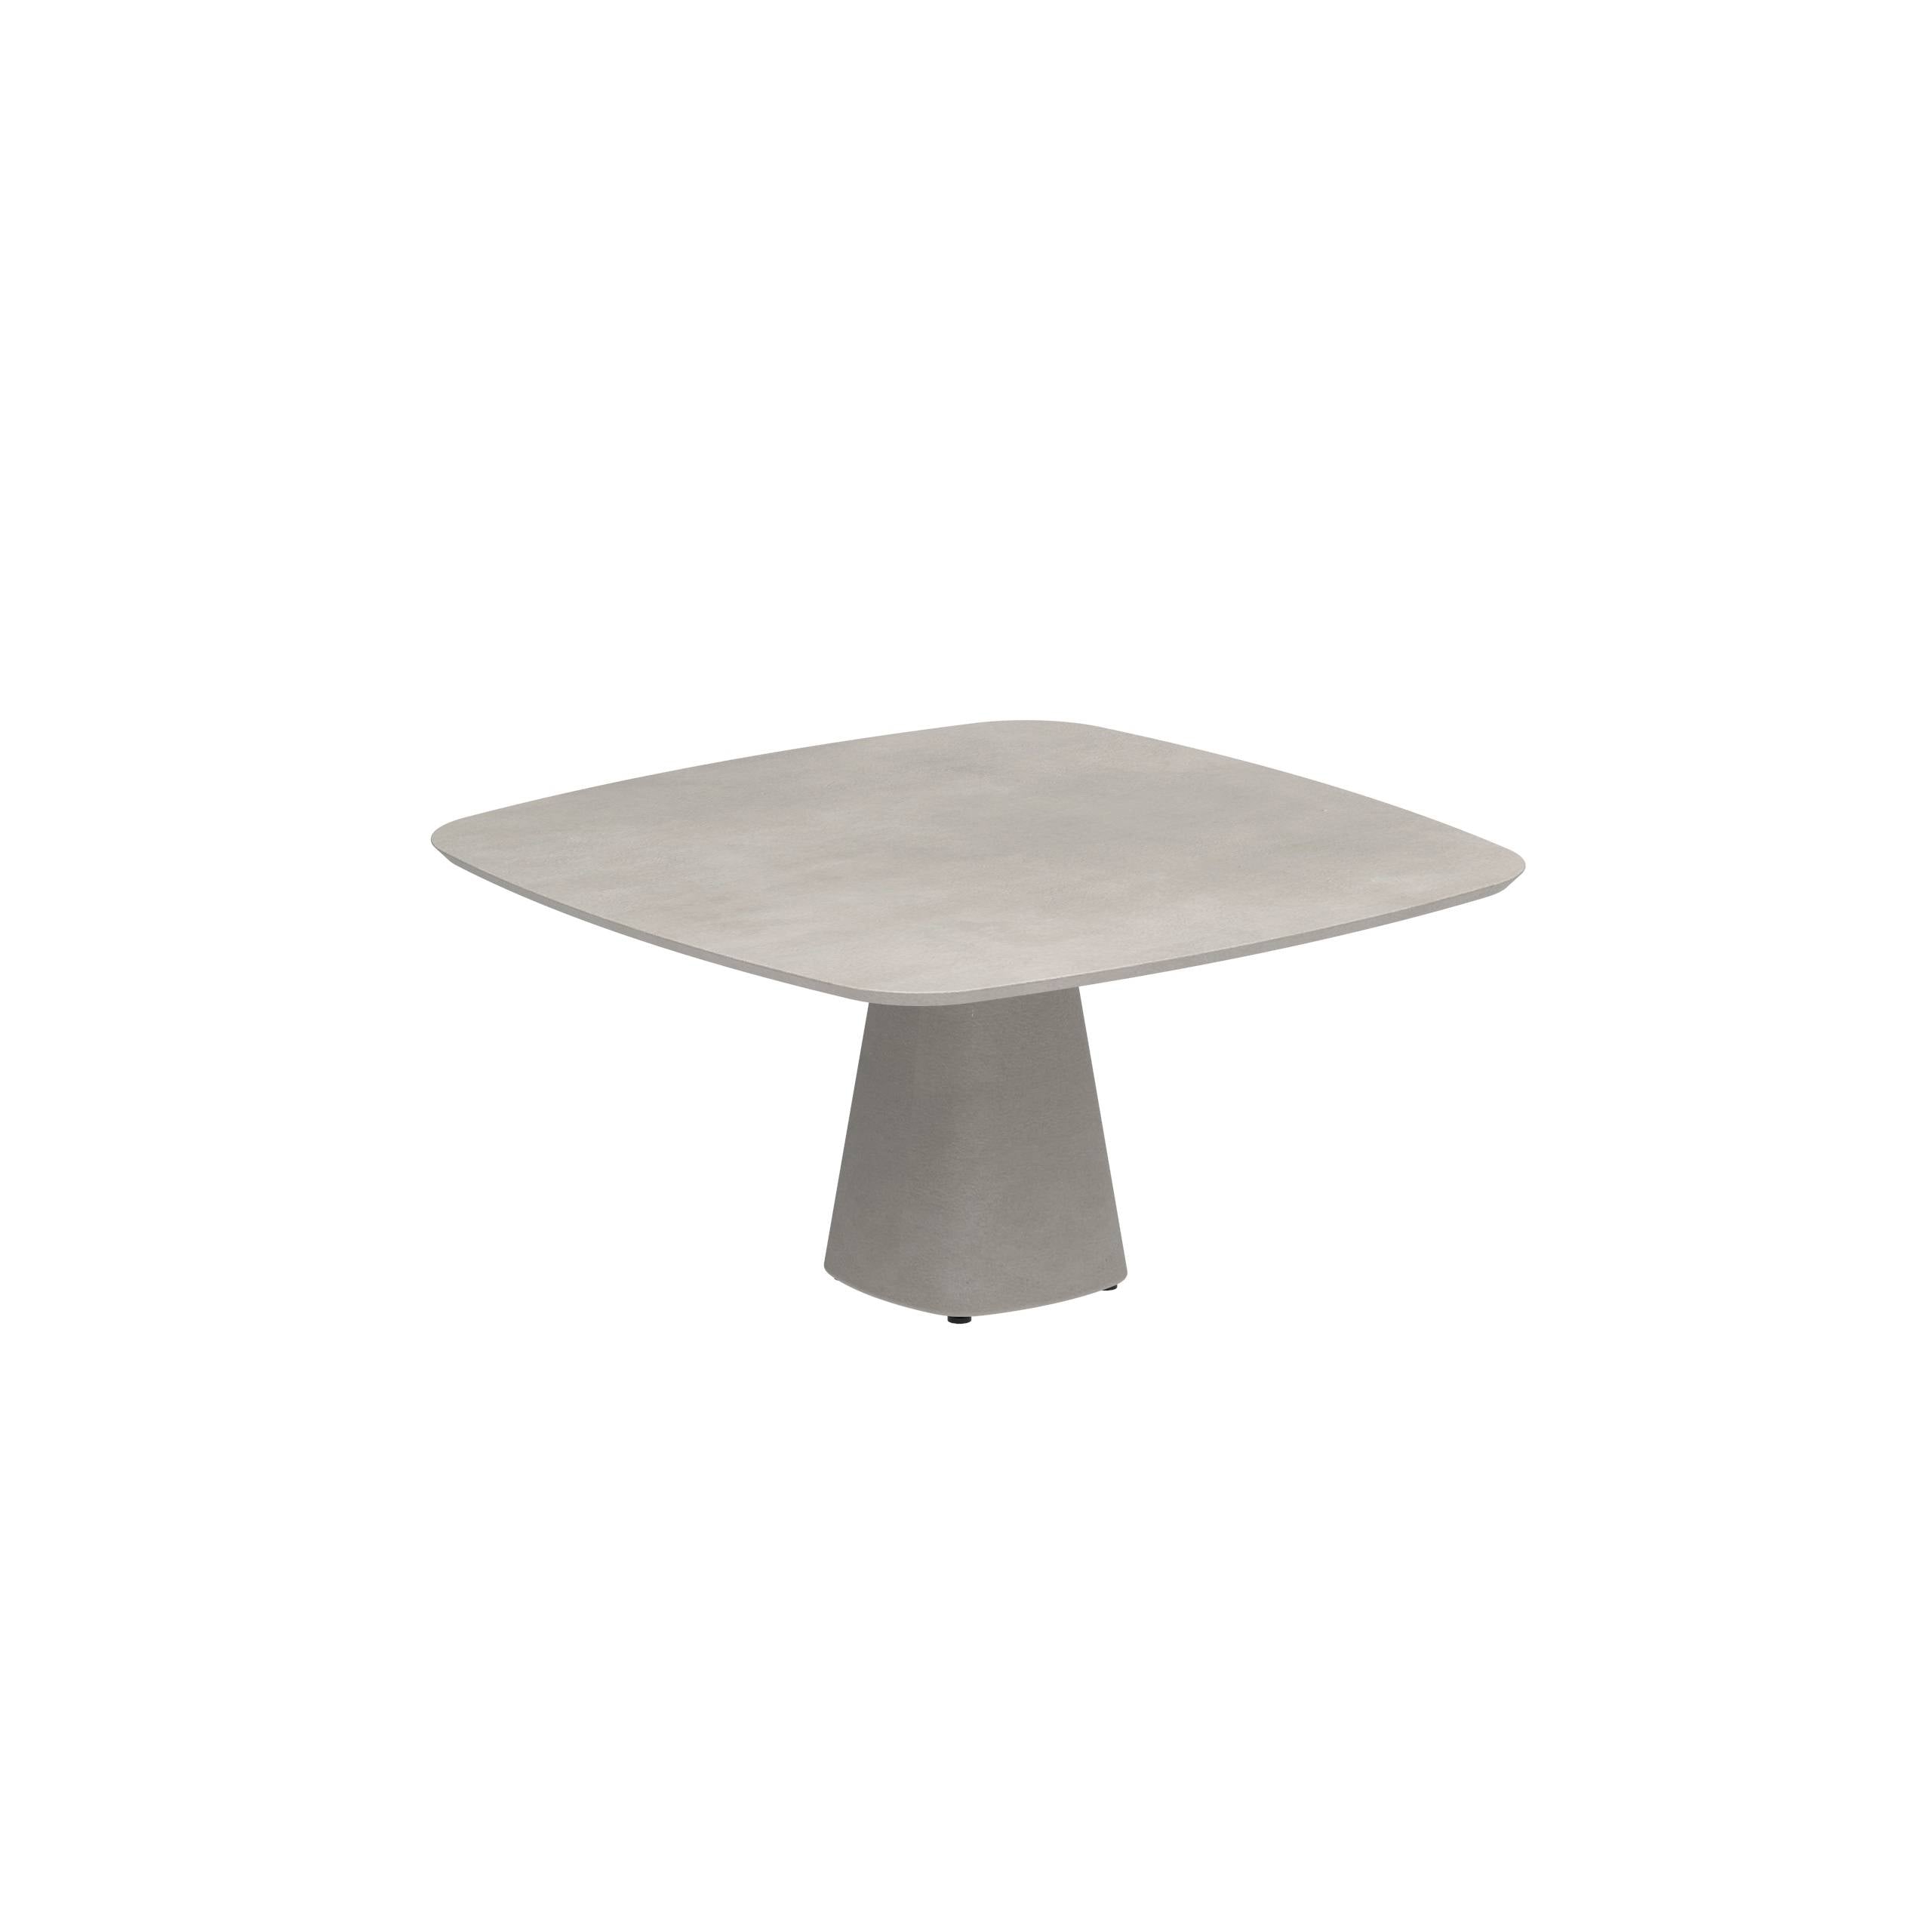 Conix Table 150x150 Legs Concrete Cement Grey - Table Top Concrete